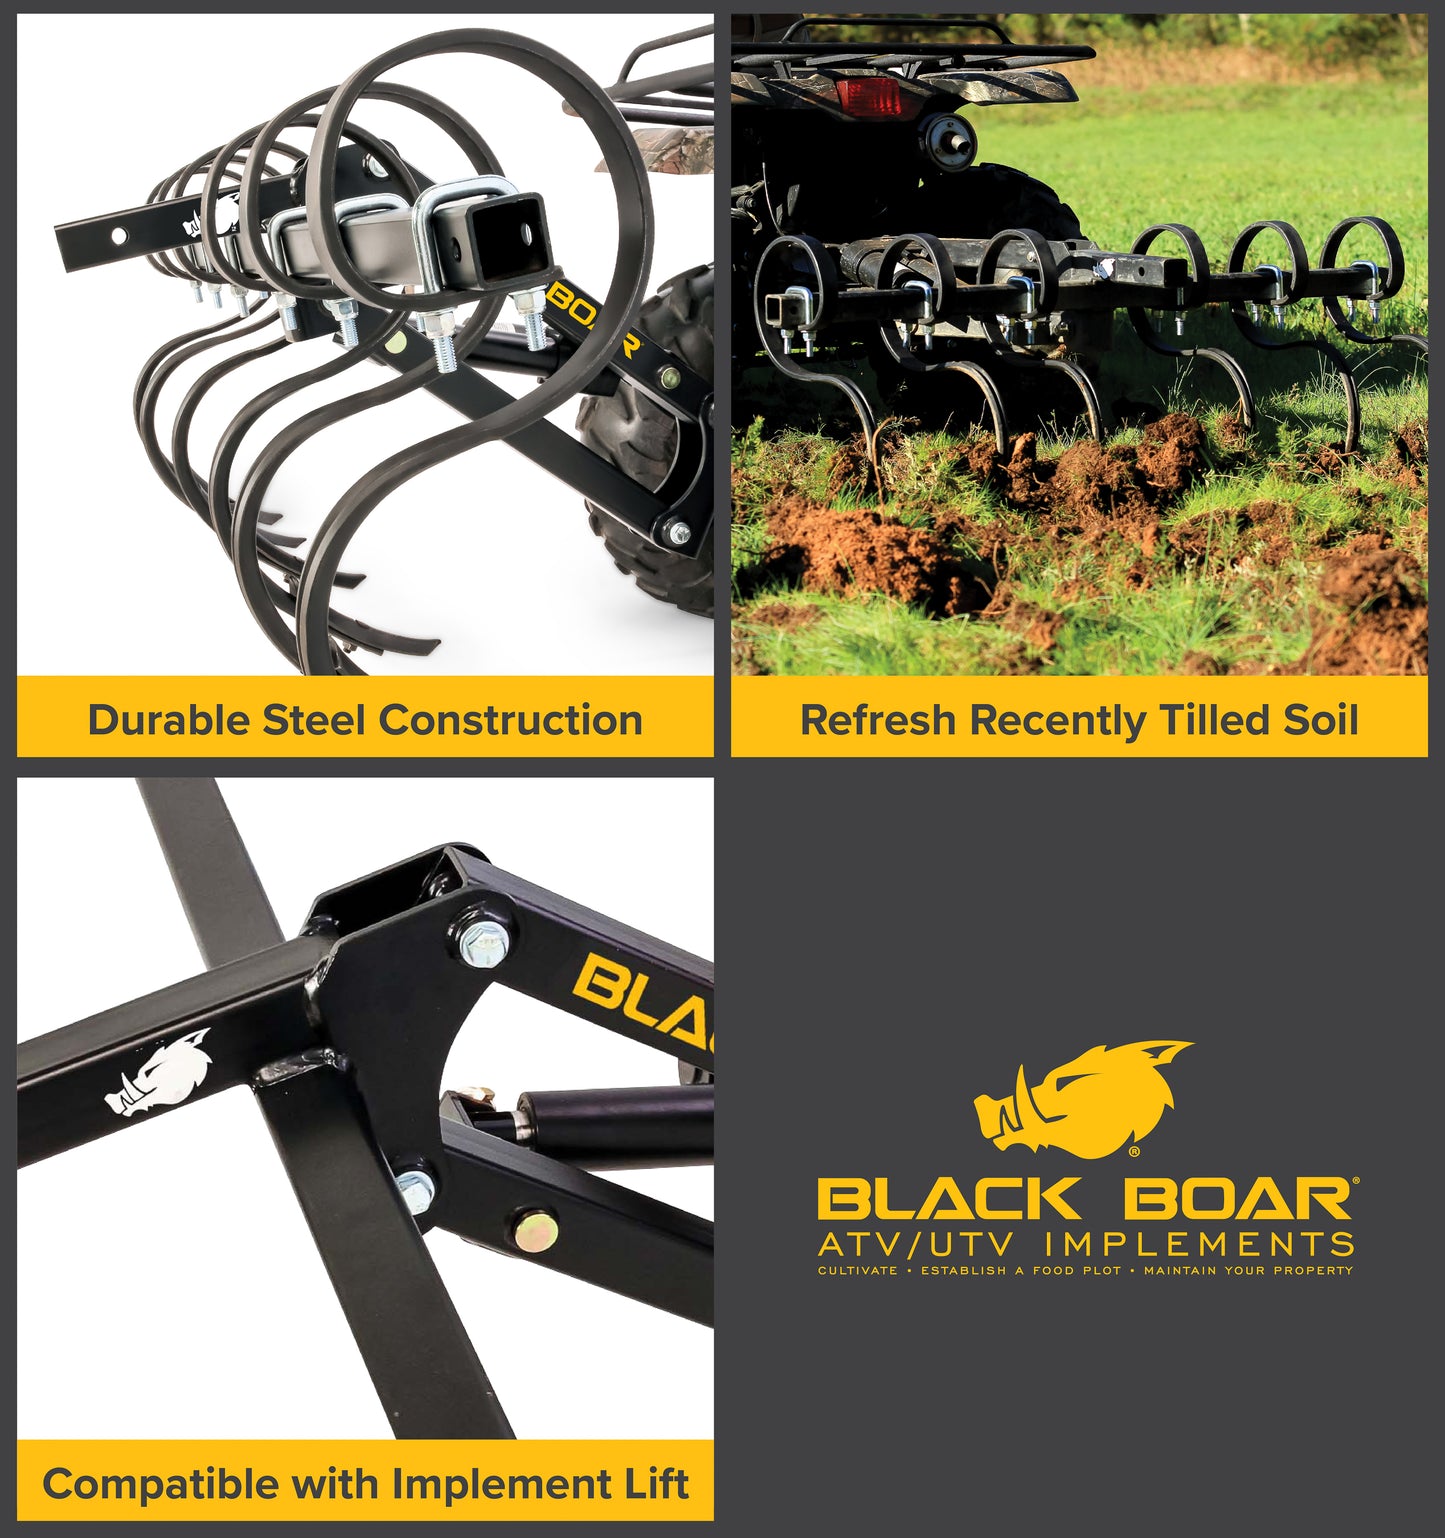 Black Boar ATV / UTV S-Tine Cultivator